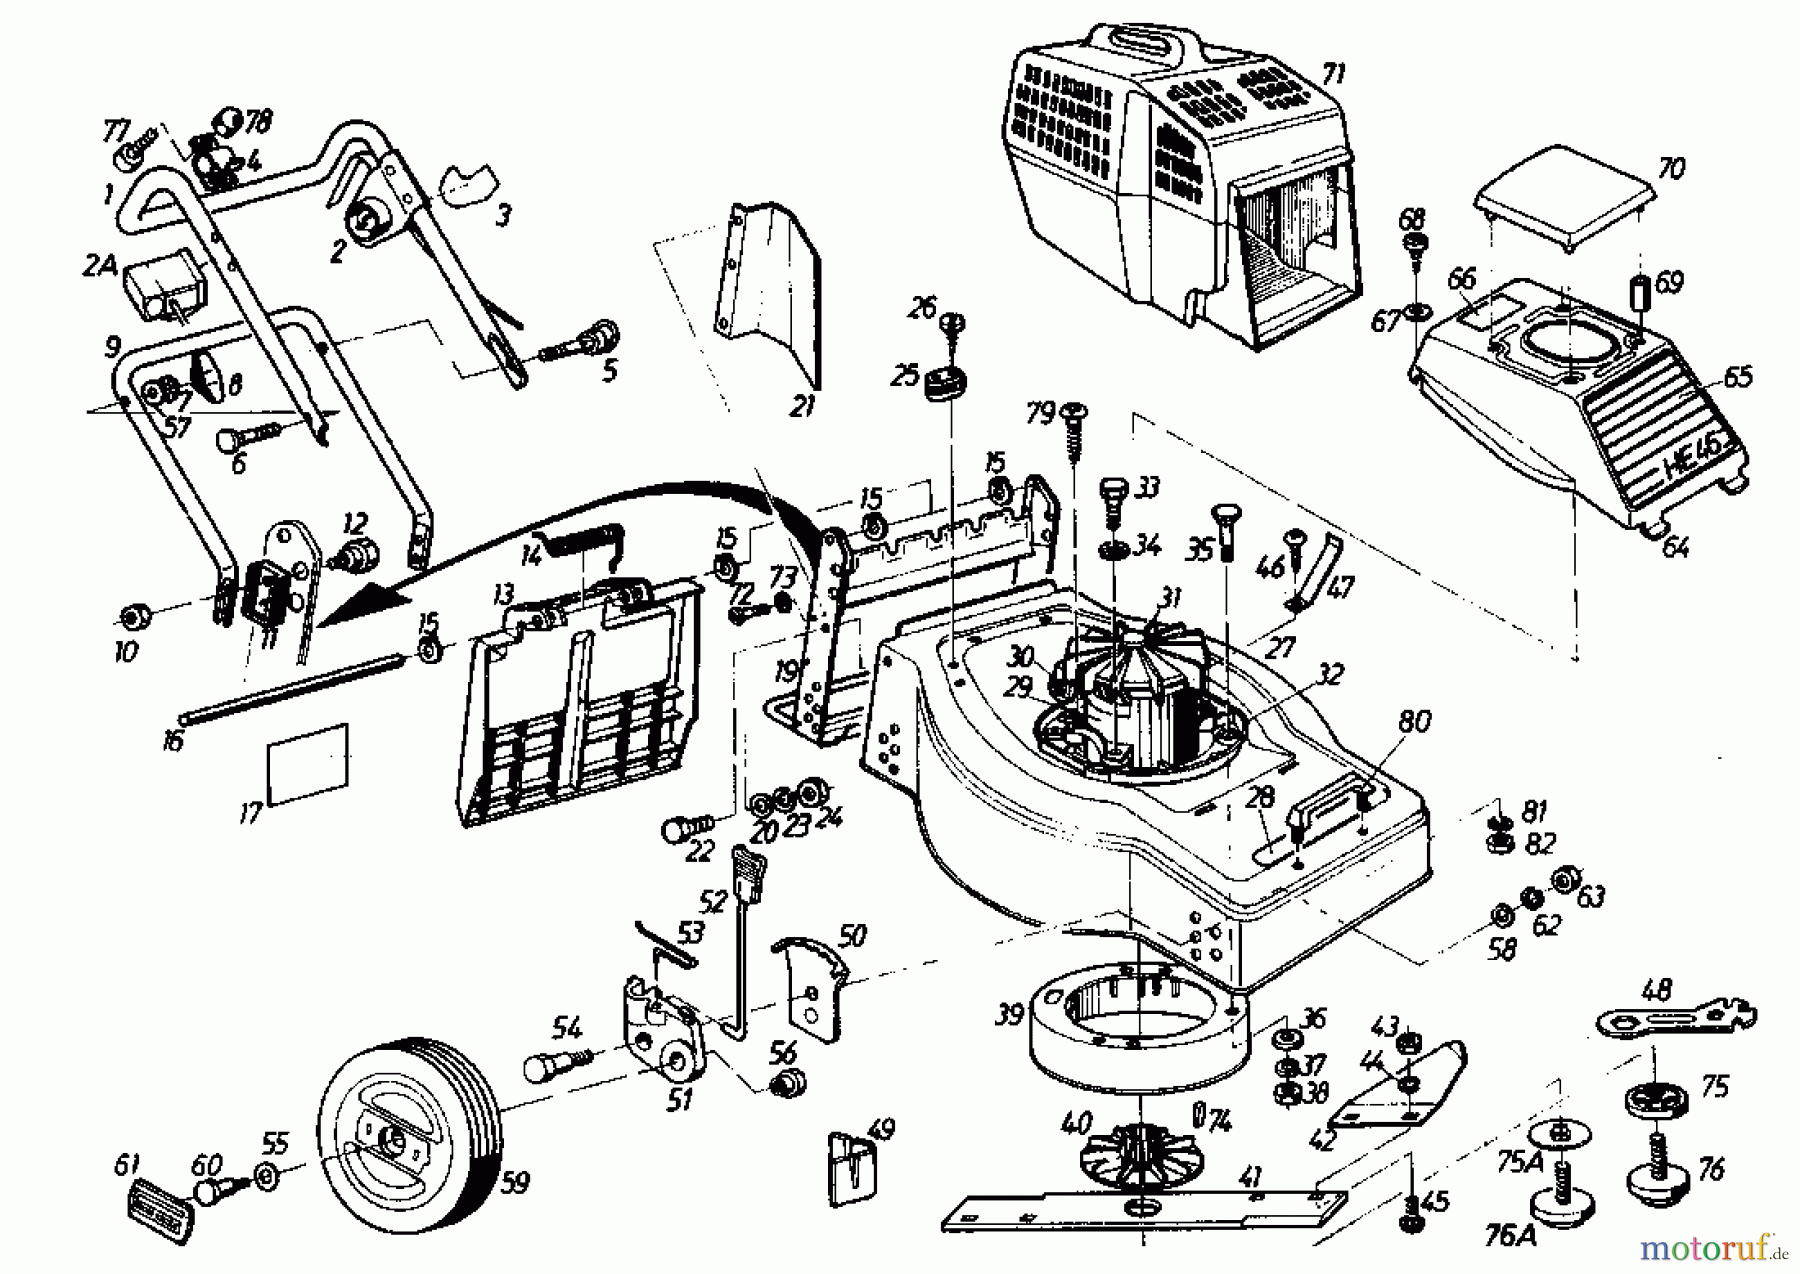  Gutbrod Tondeuse électrique HE 46 02865.03  (1985) Machine de base